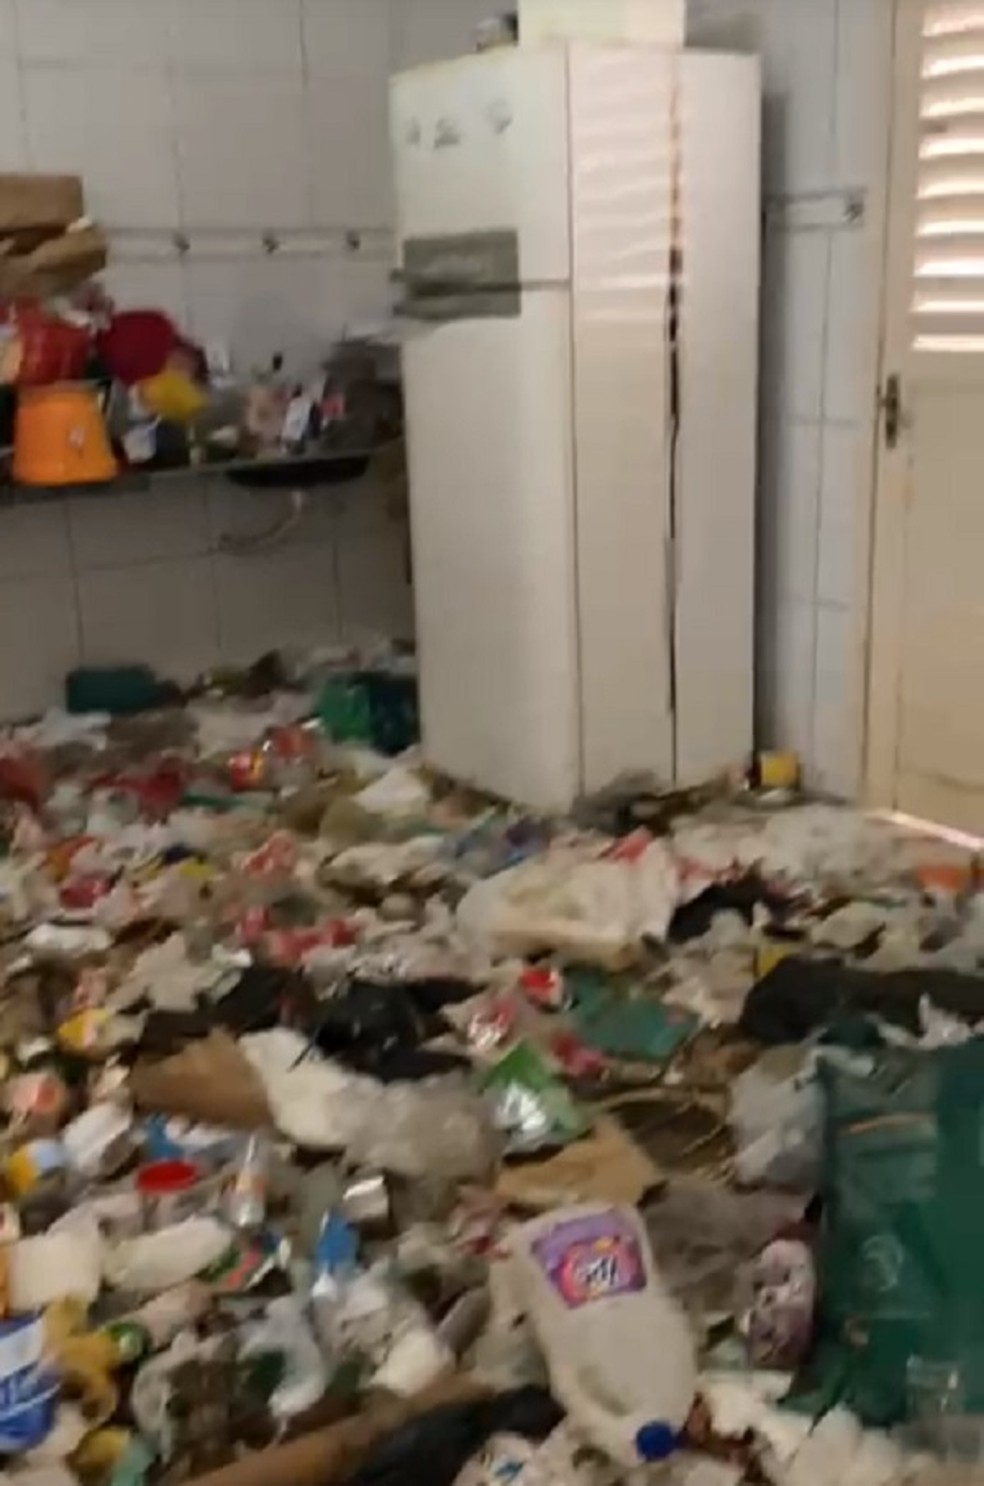 Adolescente foi encontrado junto com mais de 20 animais em casa cheia de lixo  — Foto: Reprodução